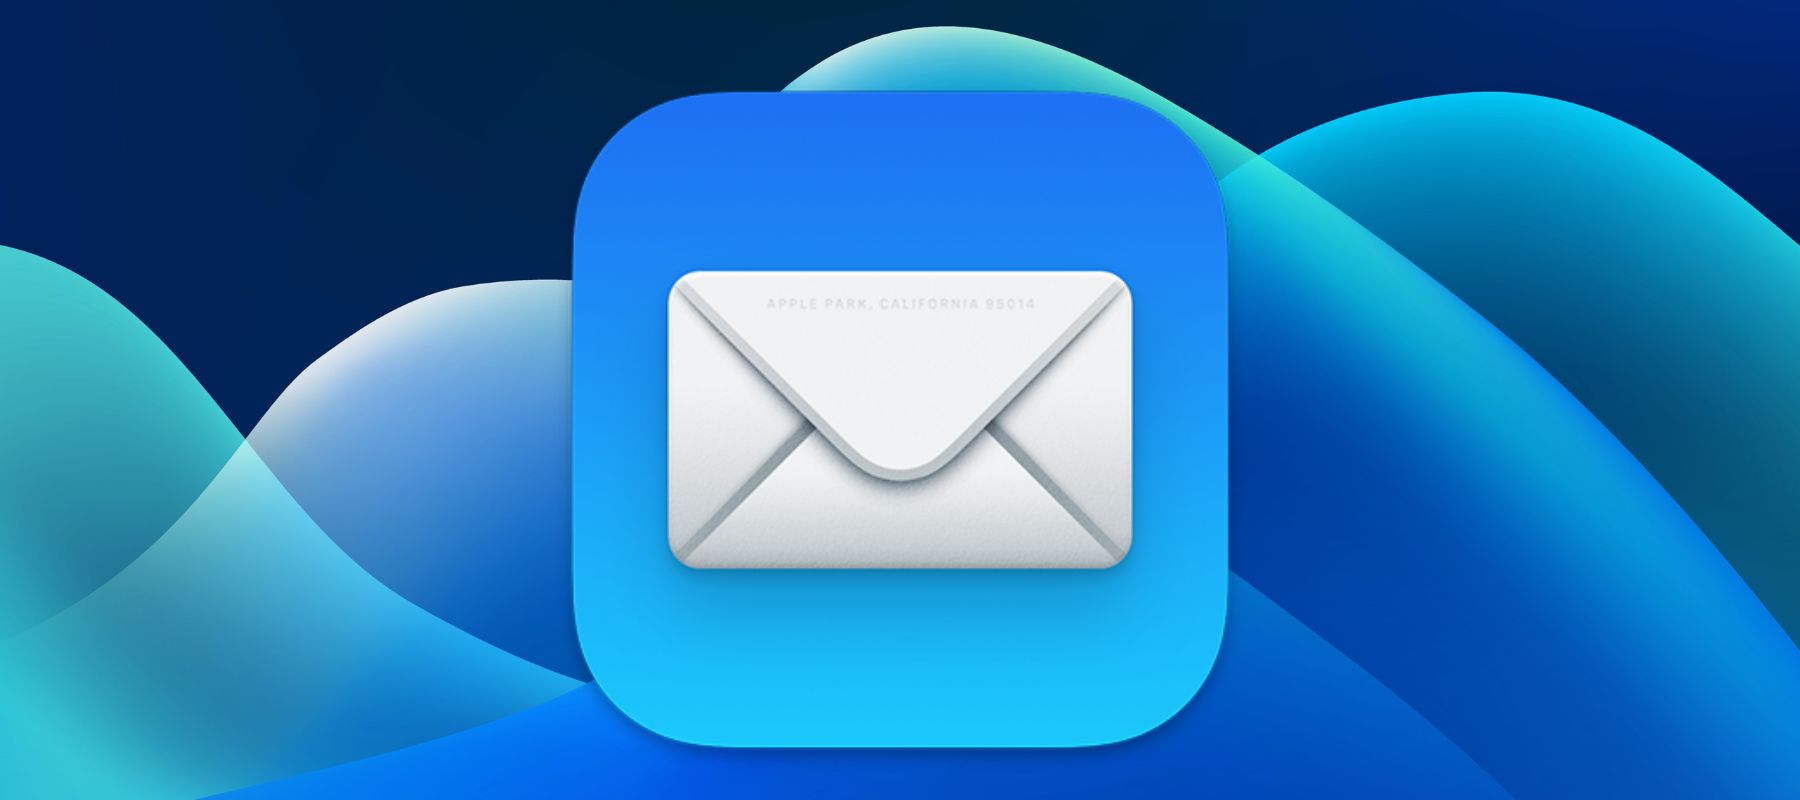 Primeros pasos en Apple: correo electrónico